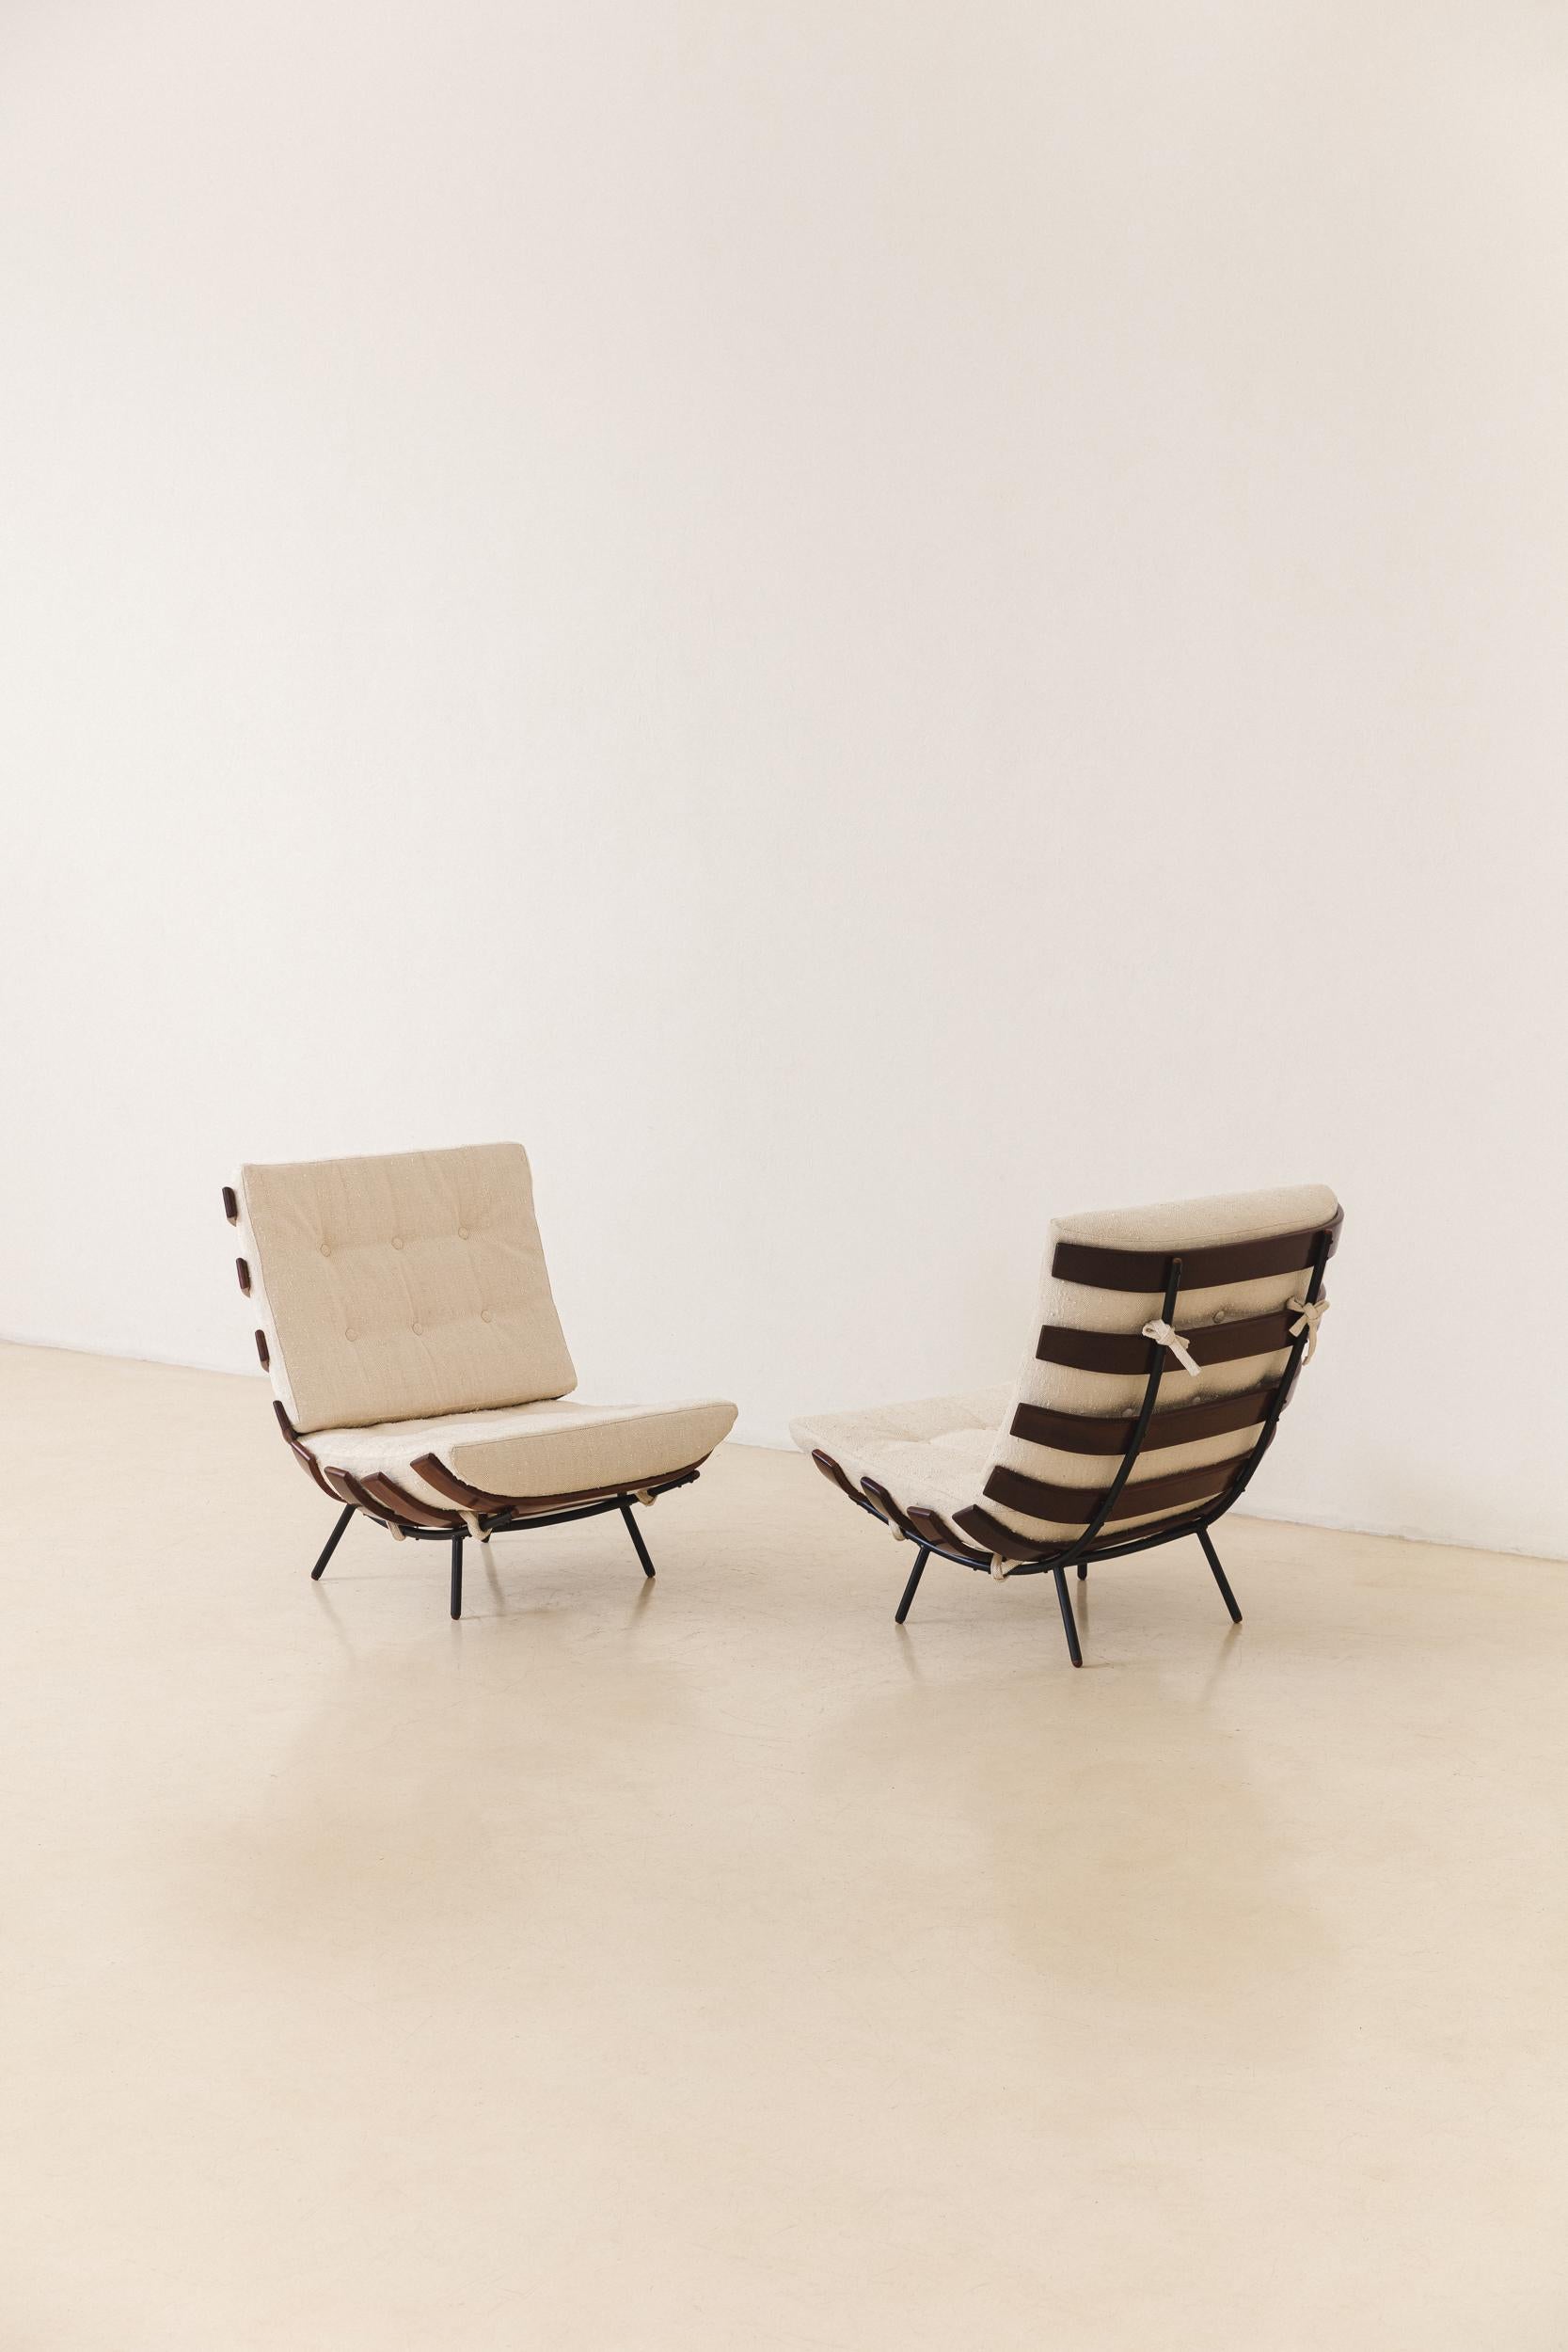 Der Costela-Sessel ist eine Ikone des brasilianischen Mid-Century Modern. Er wurde 1953 von Martin Eisler (1913 - 1977) entworfen und von den Unternehmen Móveis Artesanal und Forma S.A. hergestellt. Móveis e Objetos de Arte, wo er Partner und